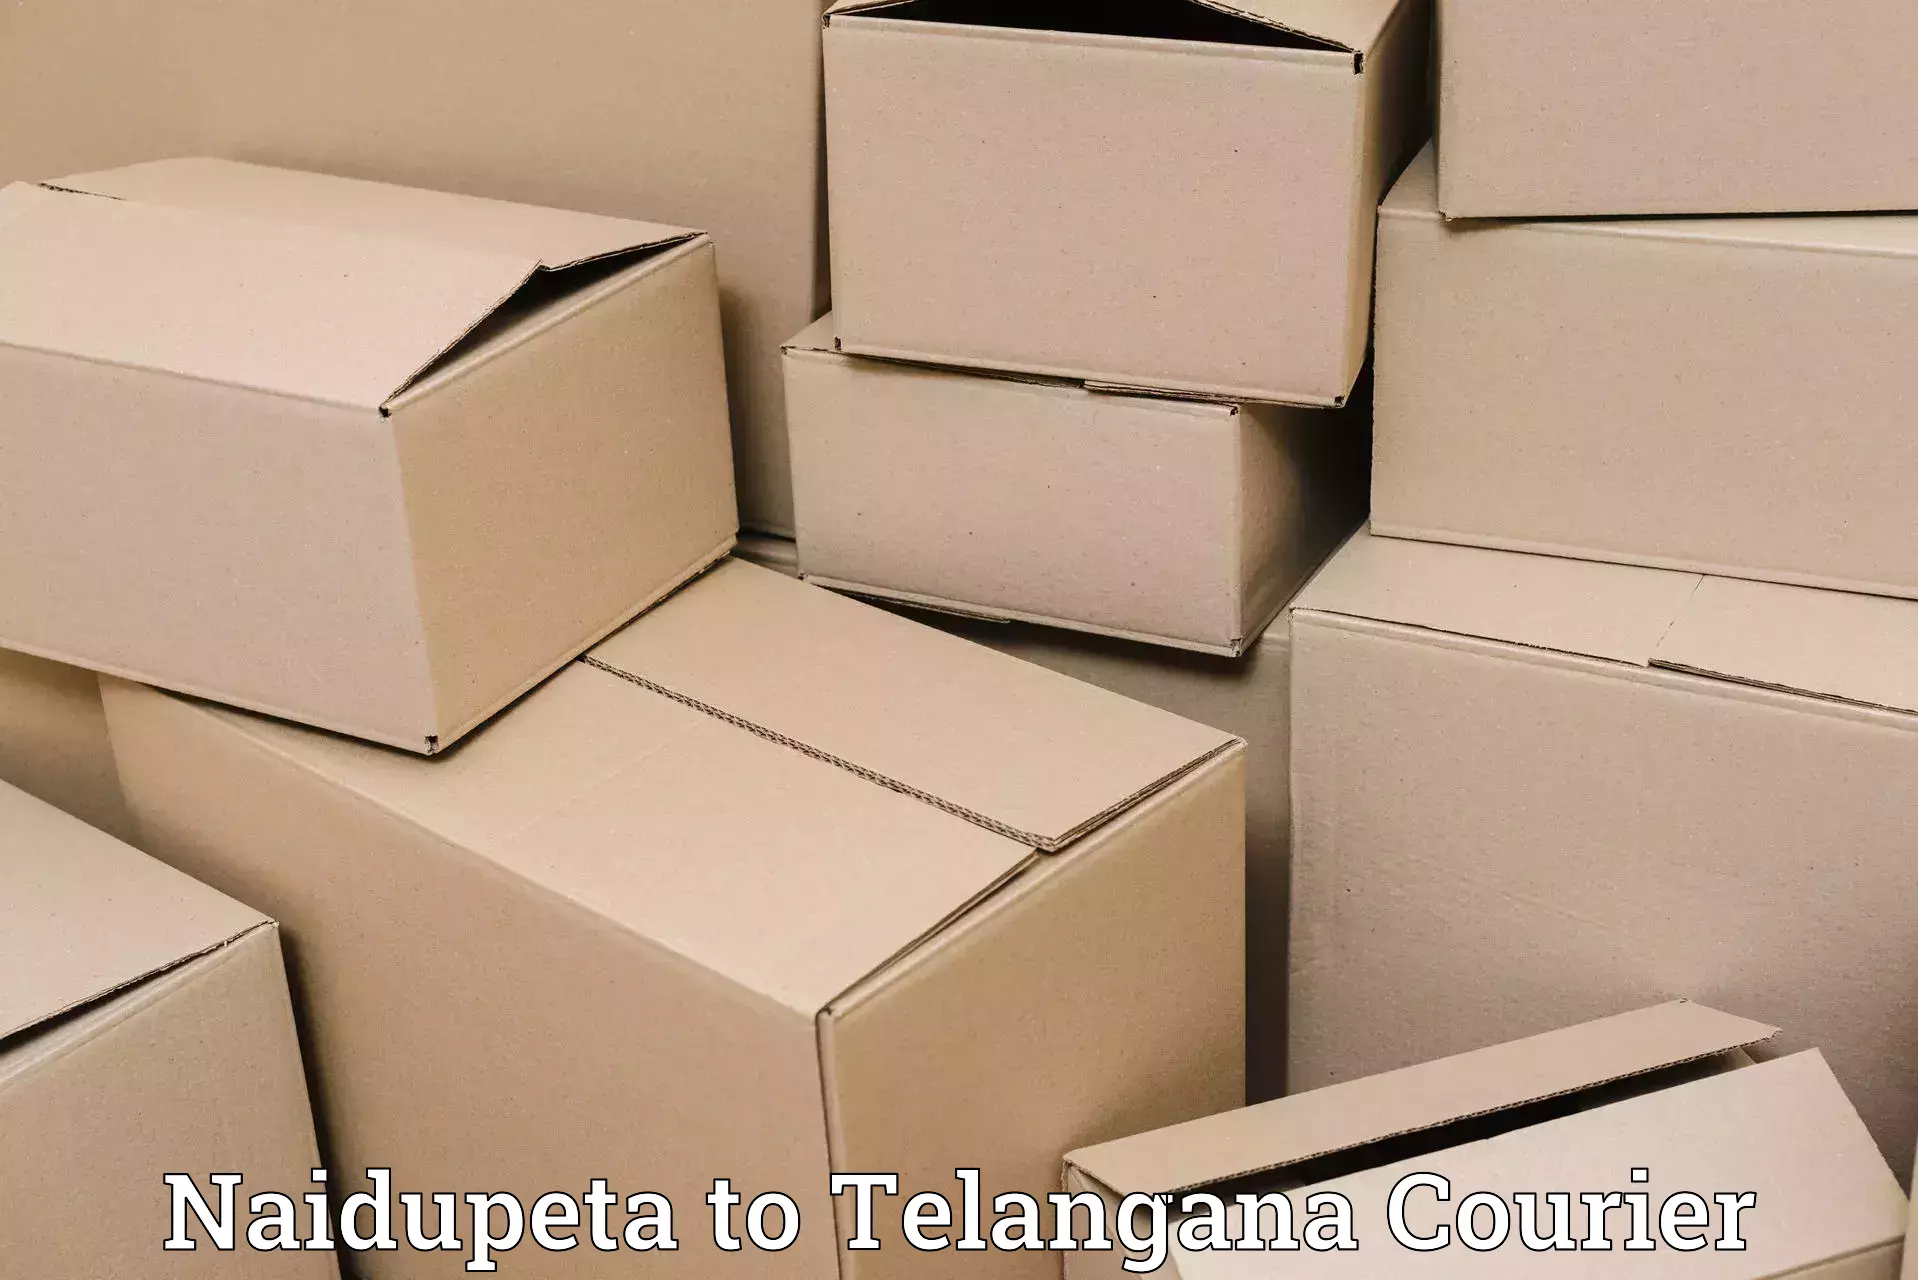 Efficient shipping operations Naidupeta to Rangareddy